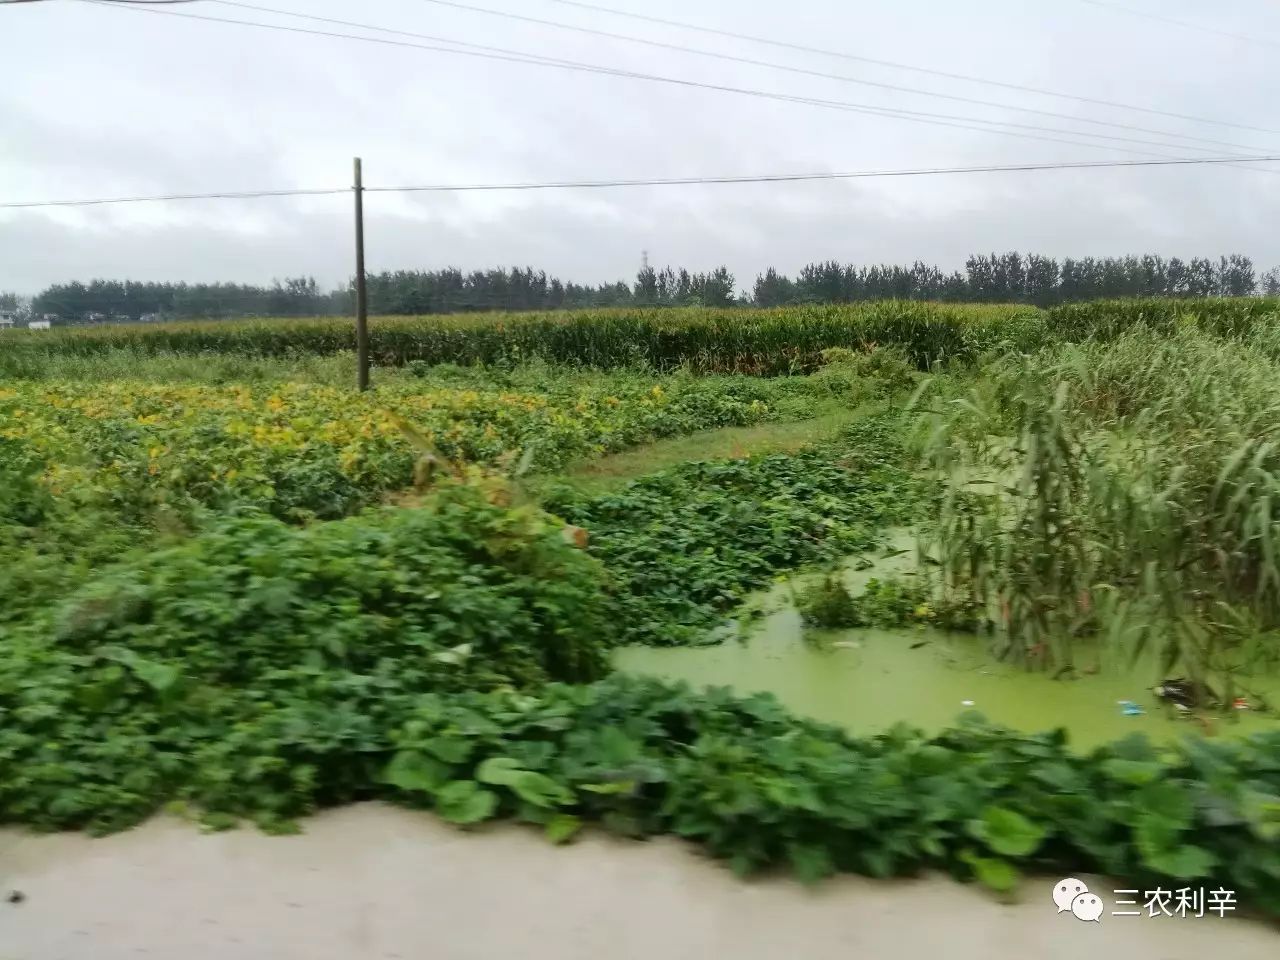 昨天,王人镇,暴雨造成部分农田被淹.